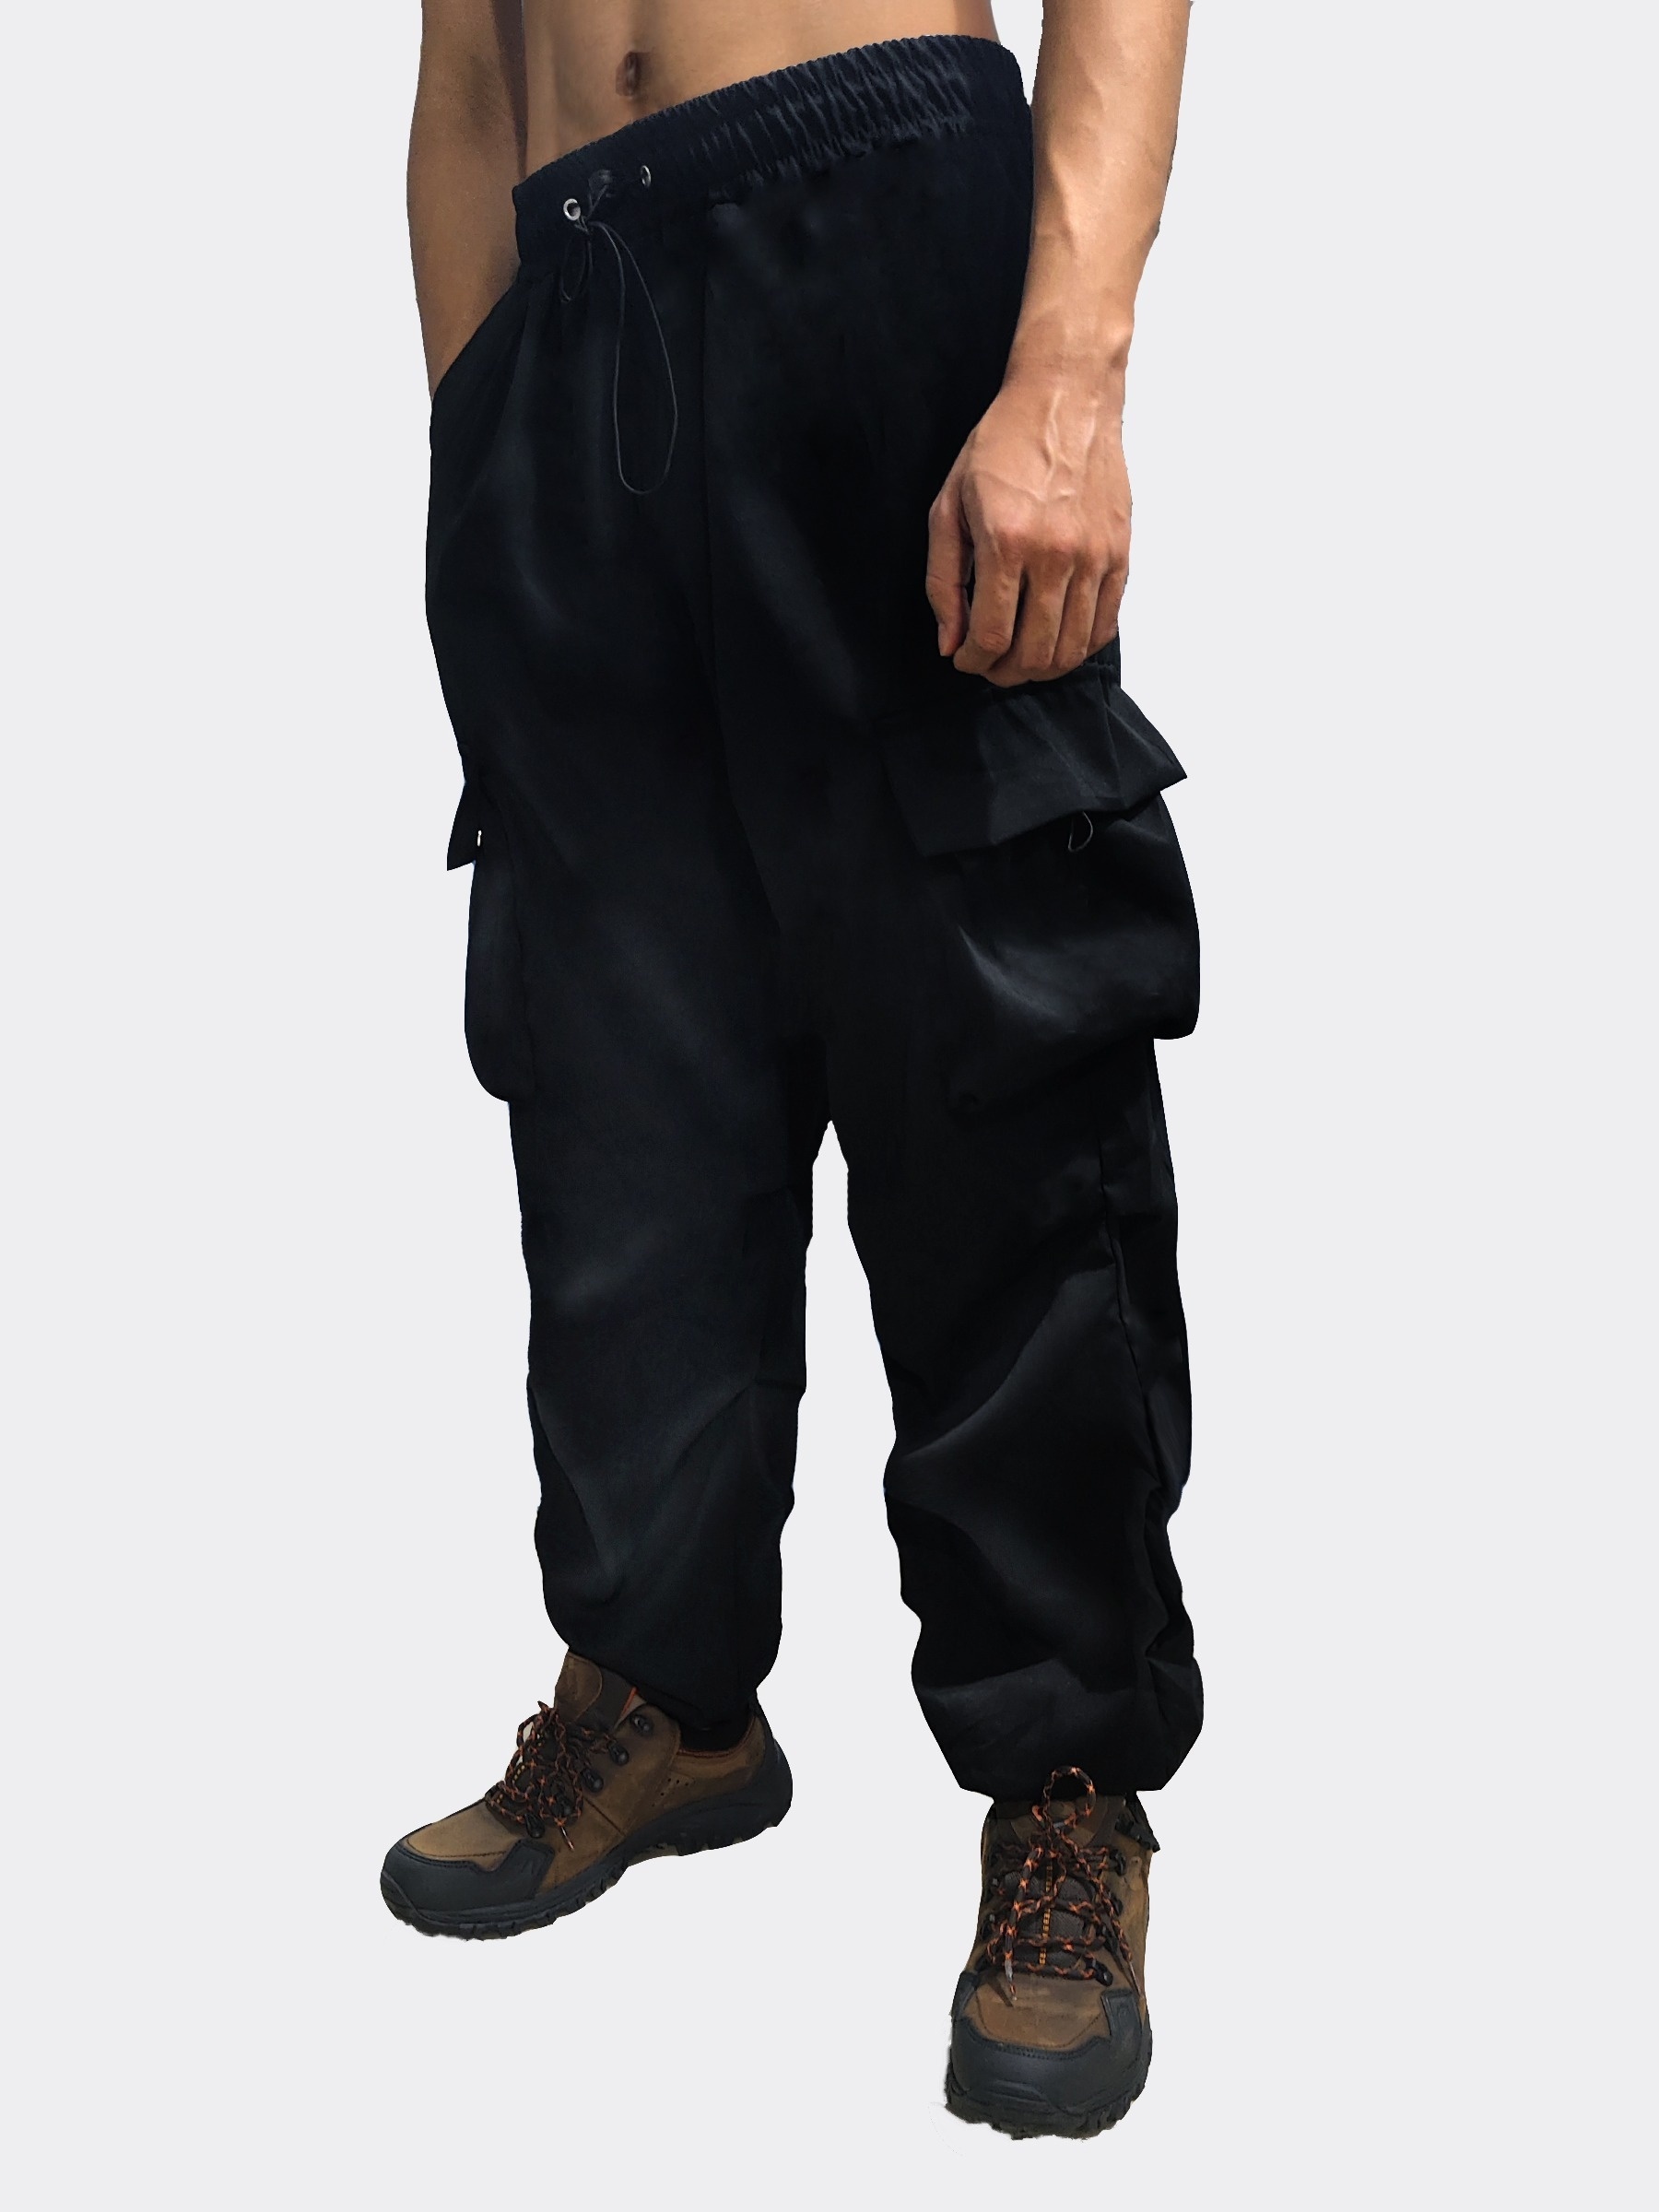 Black Cargo Pants Men Hip Hop Harem Pants Men Baggy Pants Male